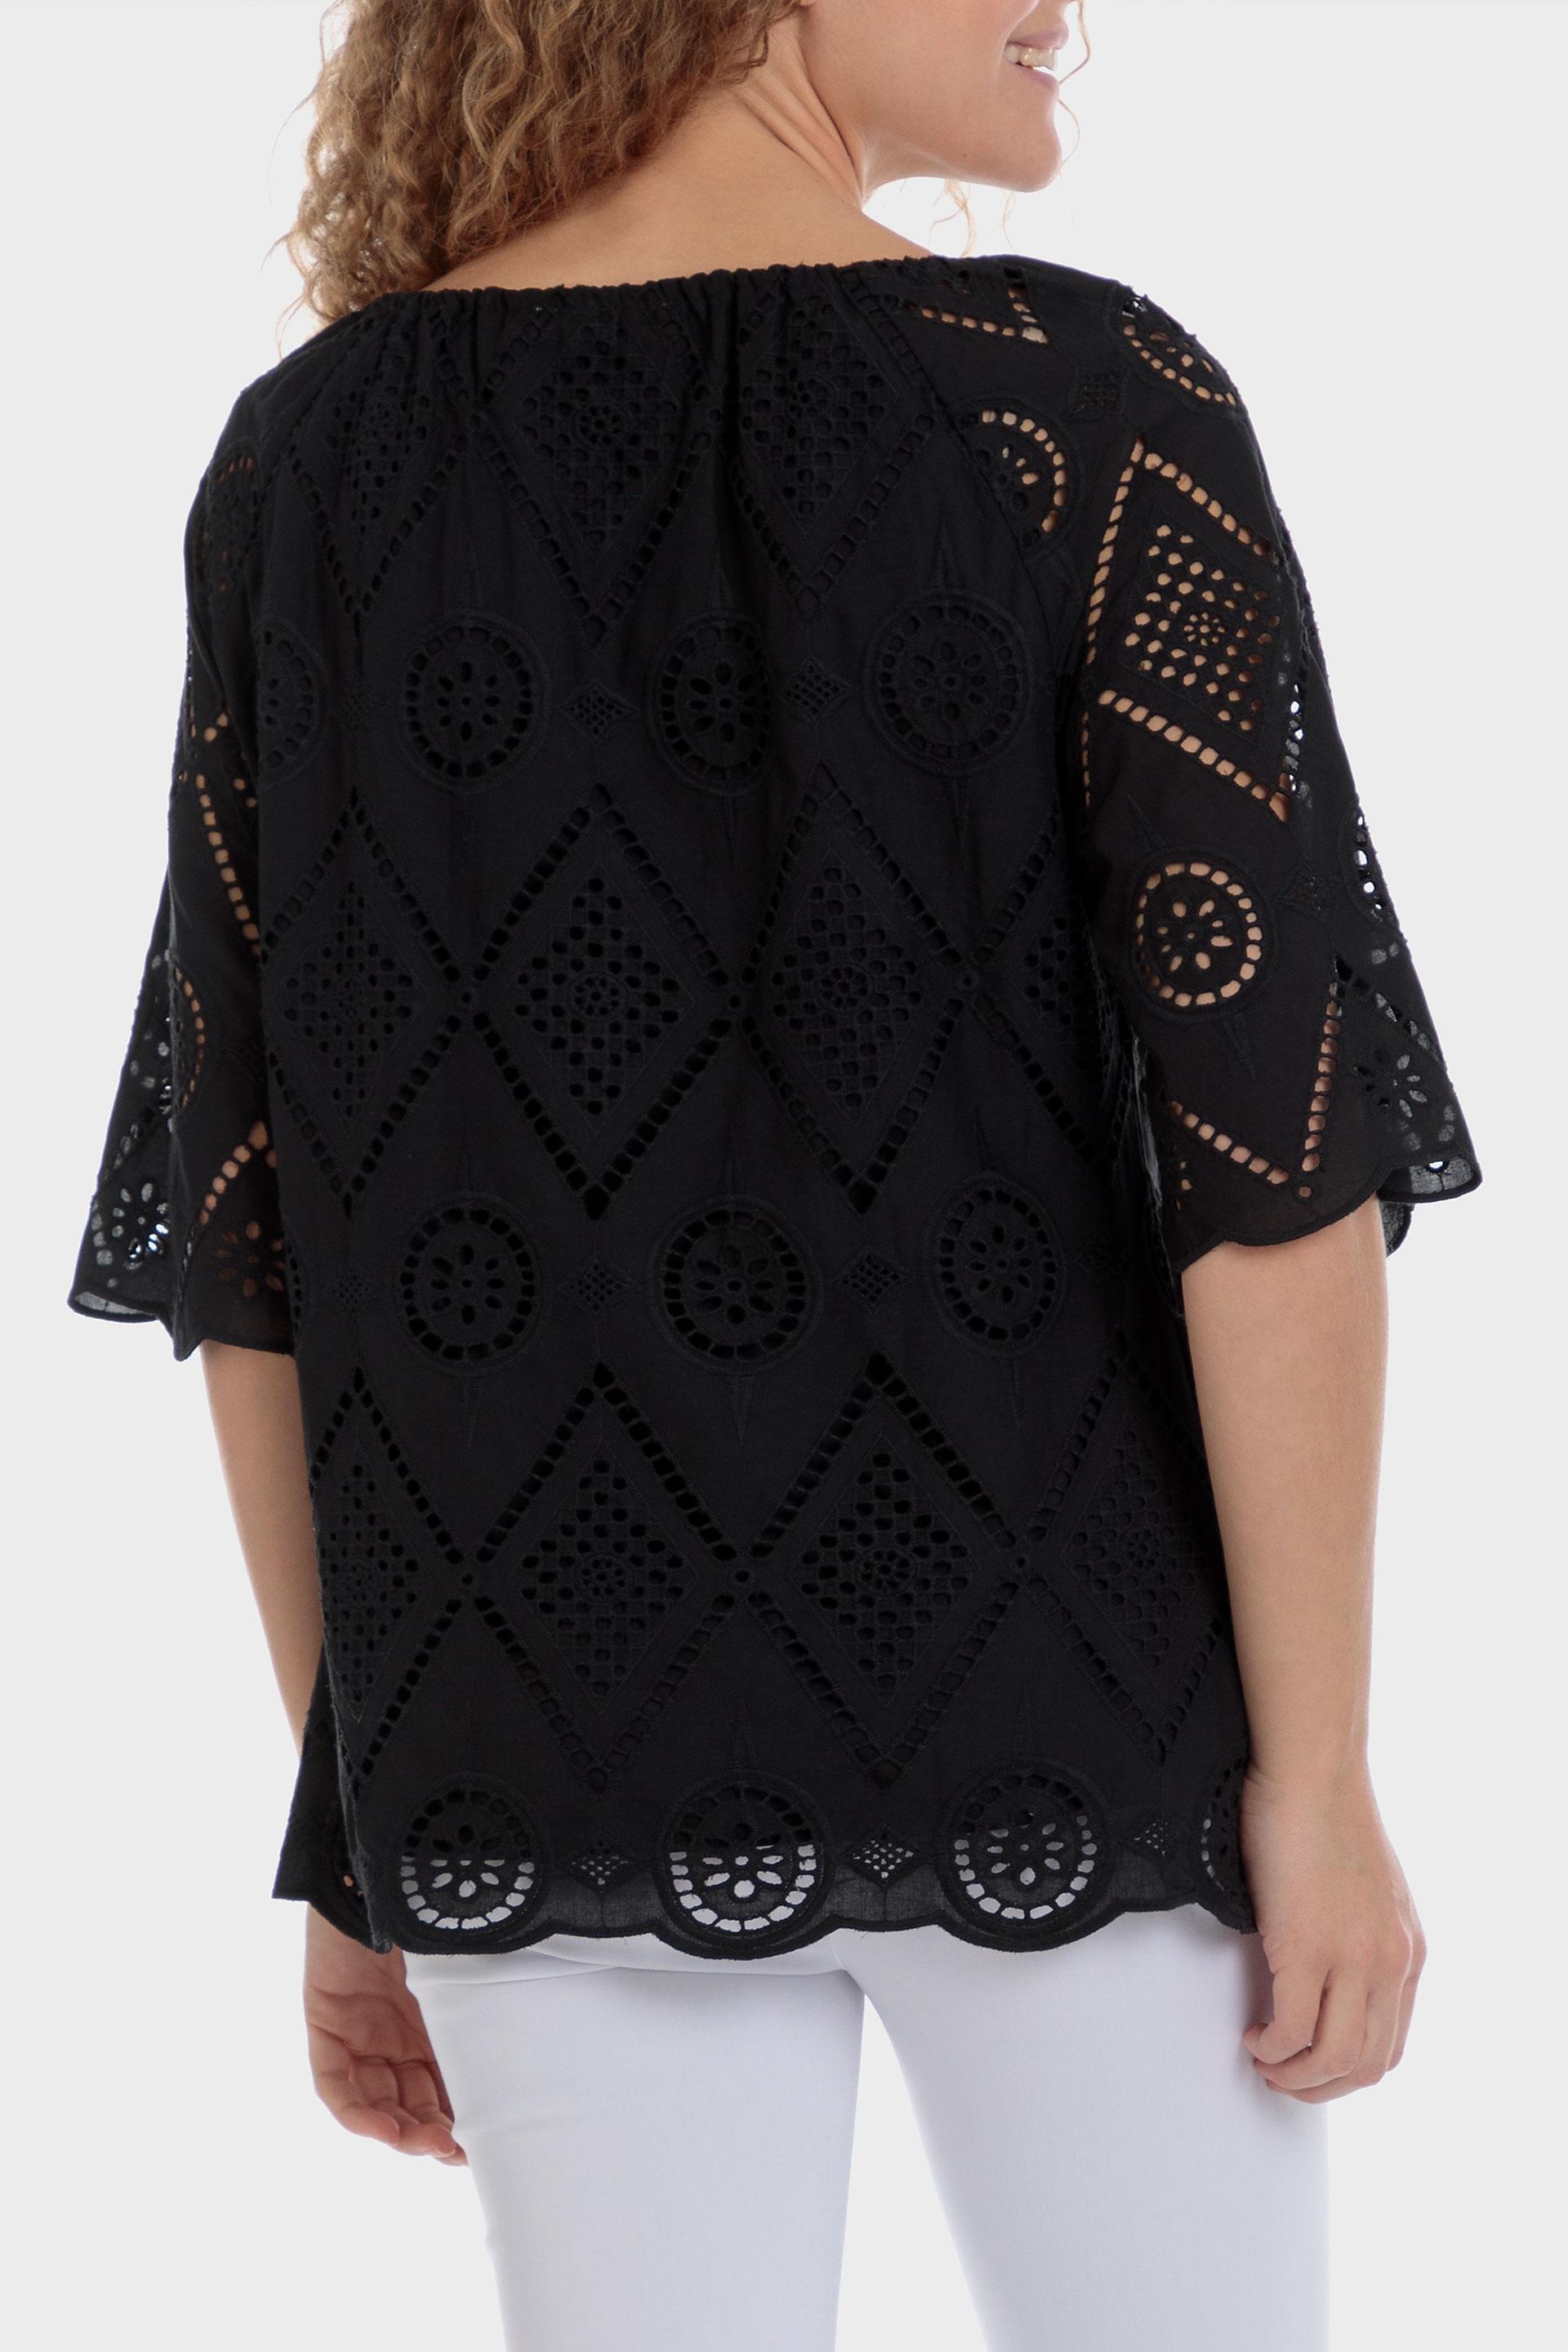 Punt Roma - Black V-Neck Embroidered Blouse